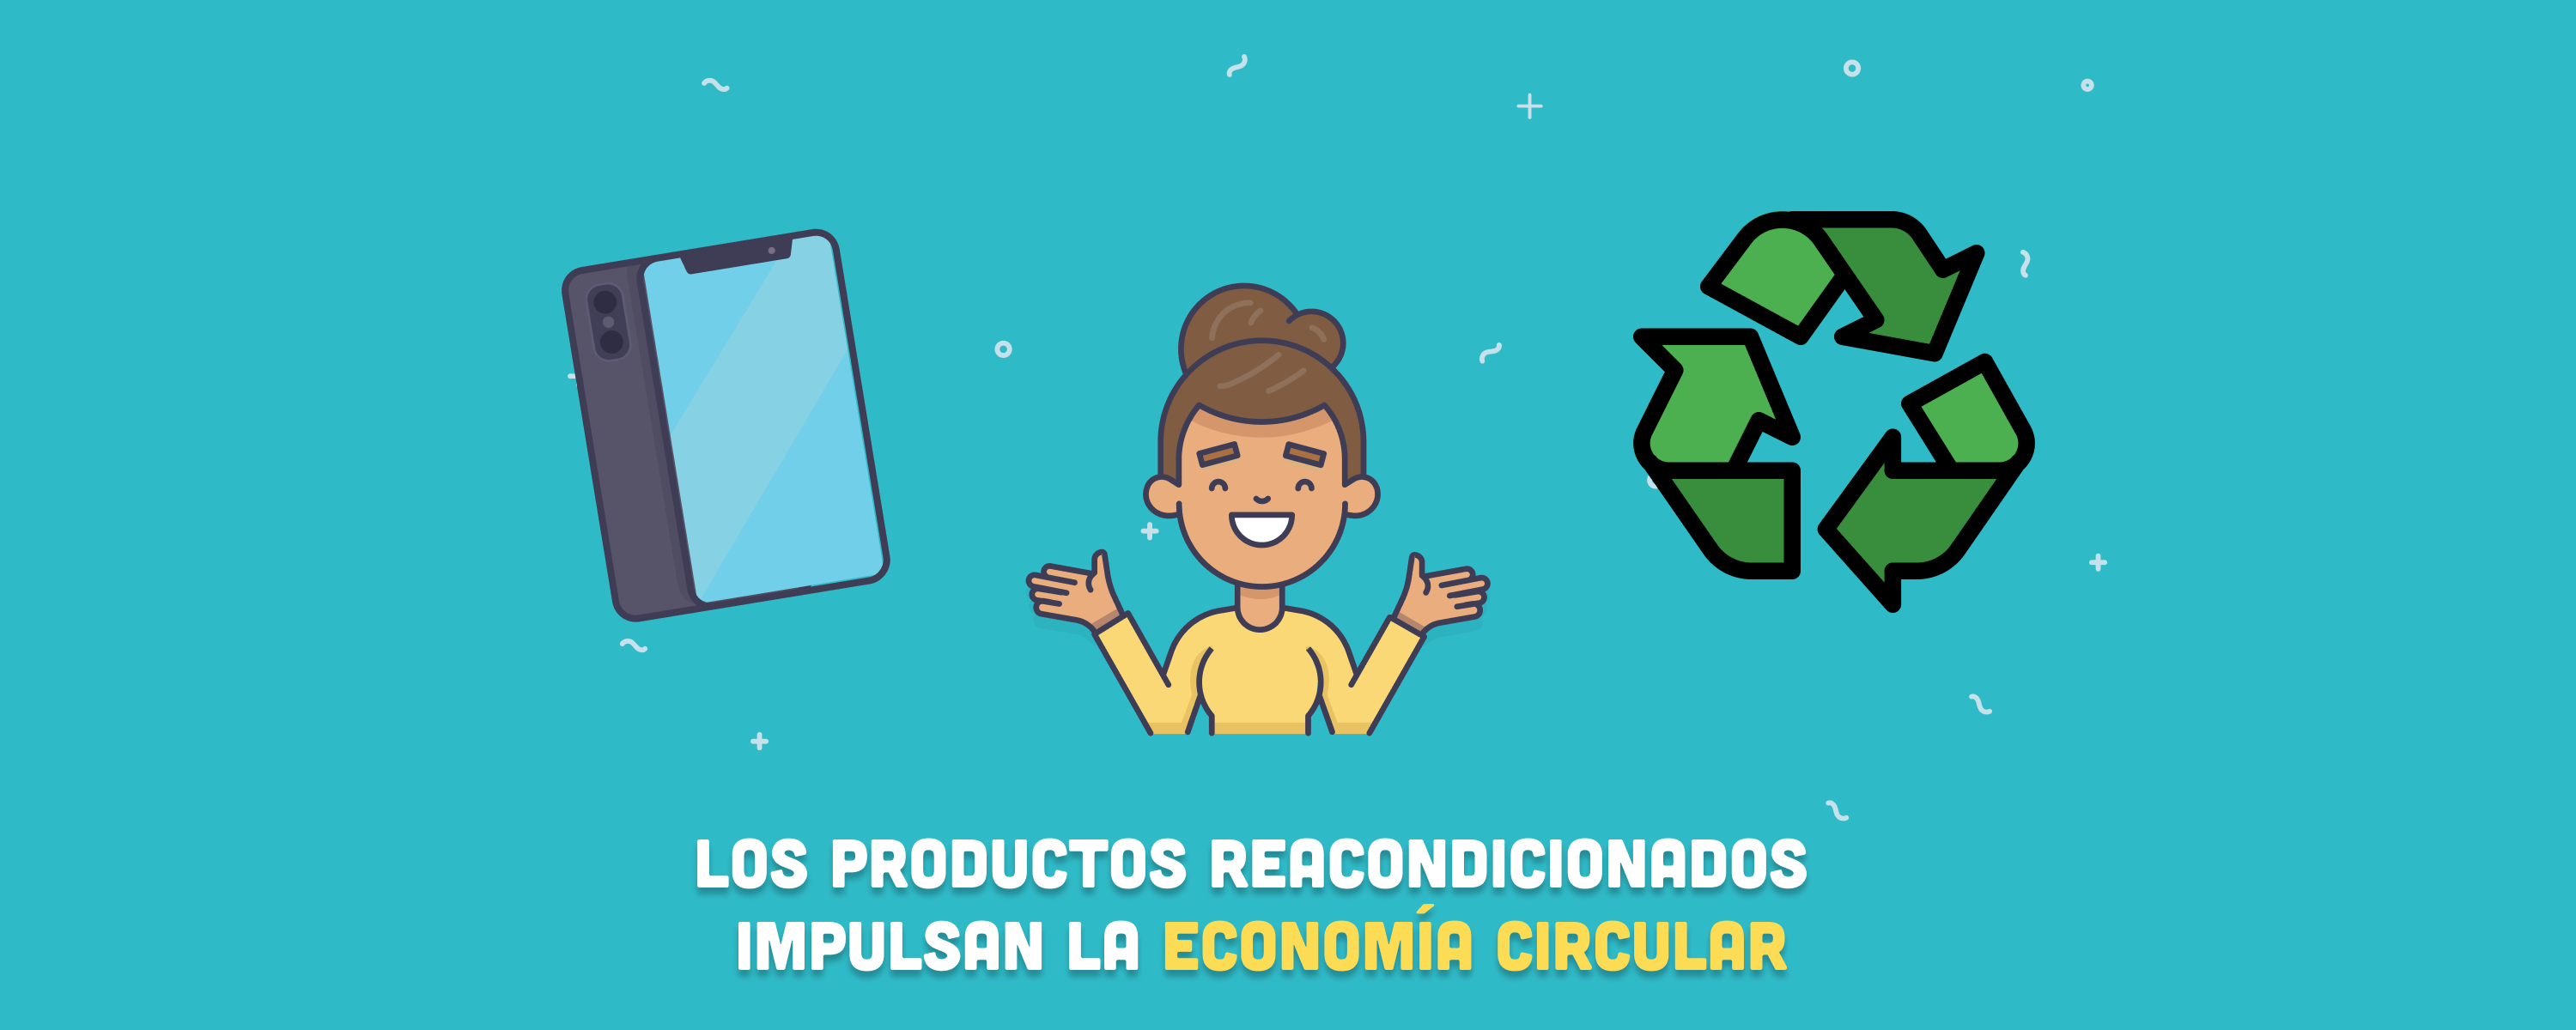 Los productos reacondicionados impulsan la economía circular